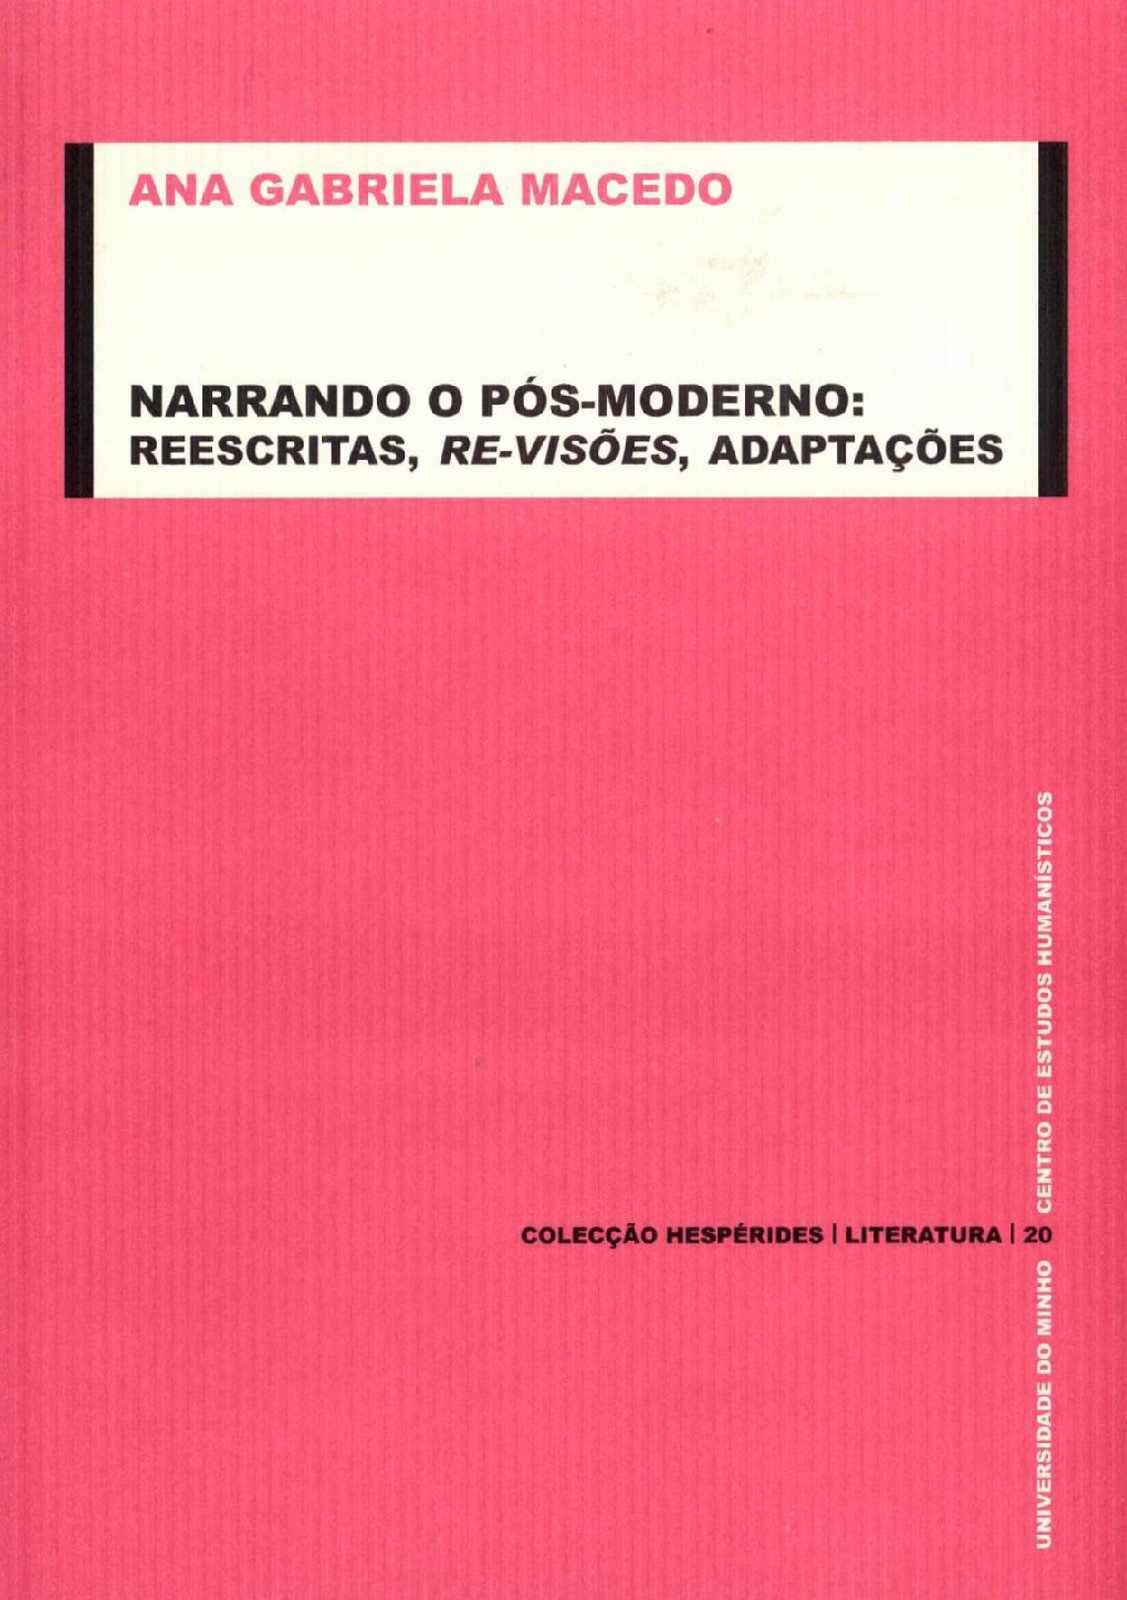 [Hesperides+Literatura+20.JPG]